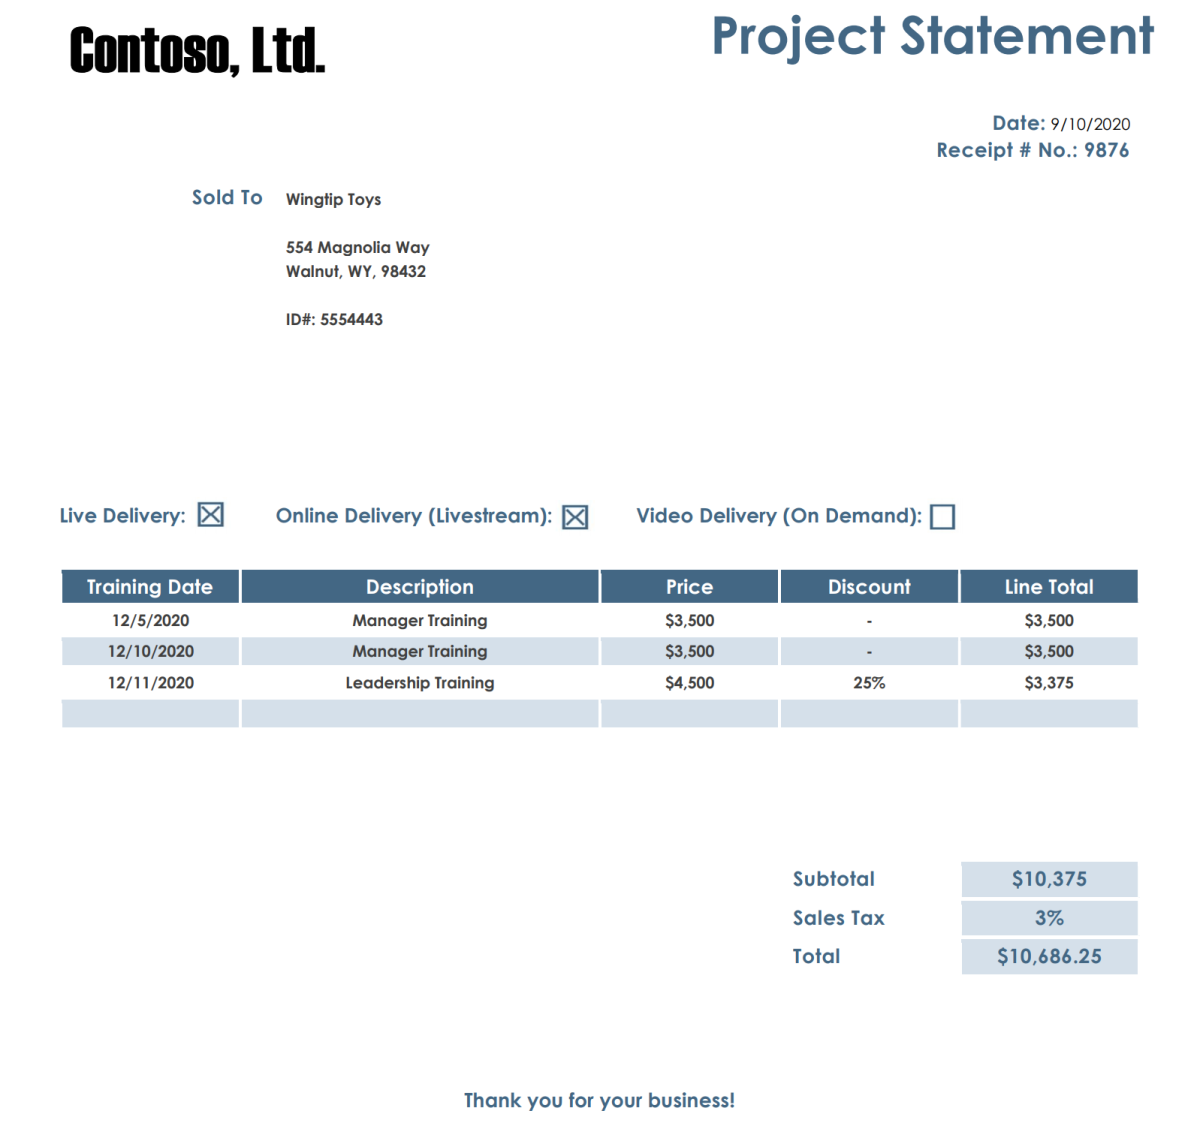 Abbildung: Contoso-Projektanweisungsdokument mit einer Tabelle